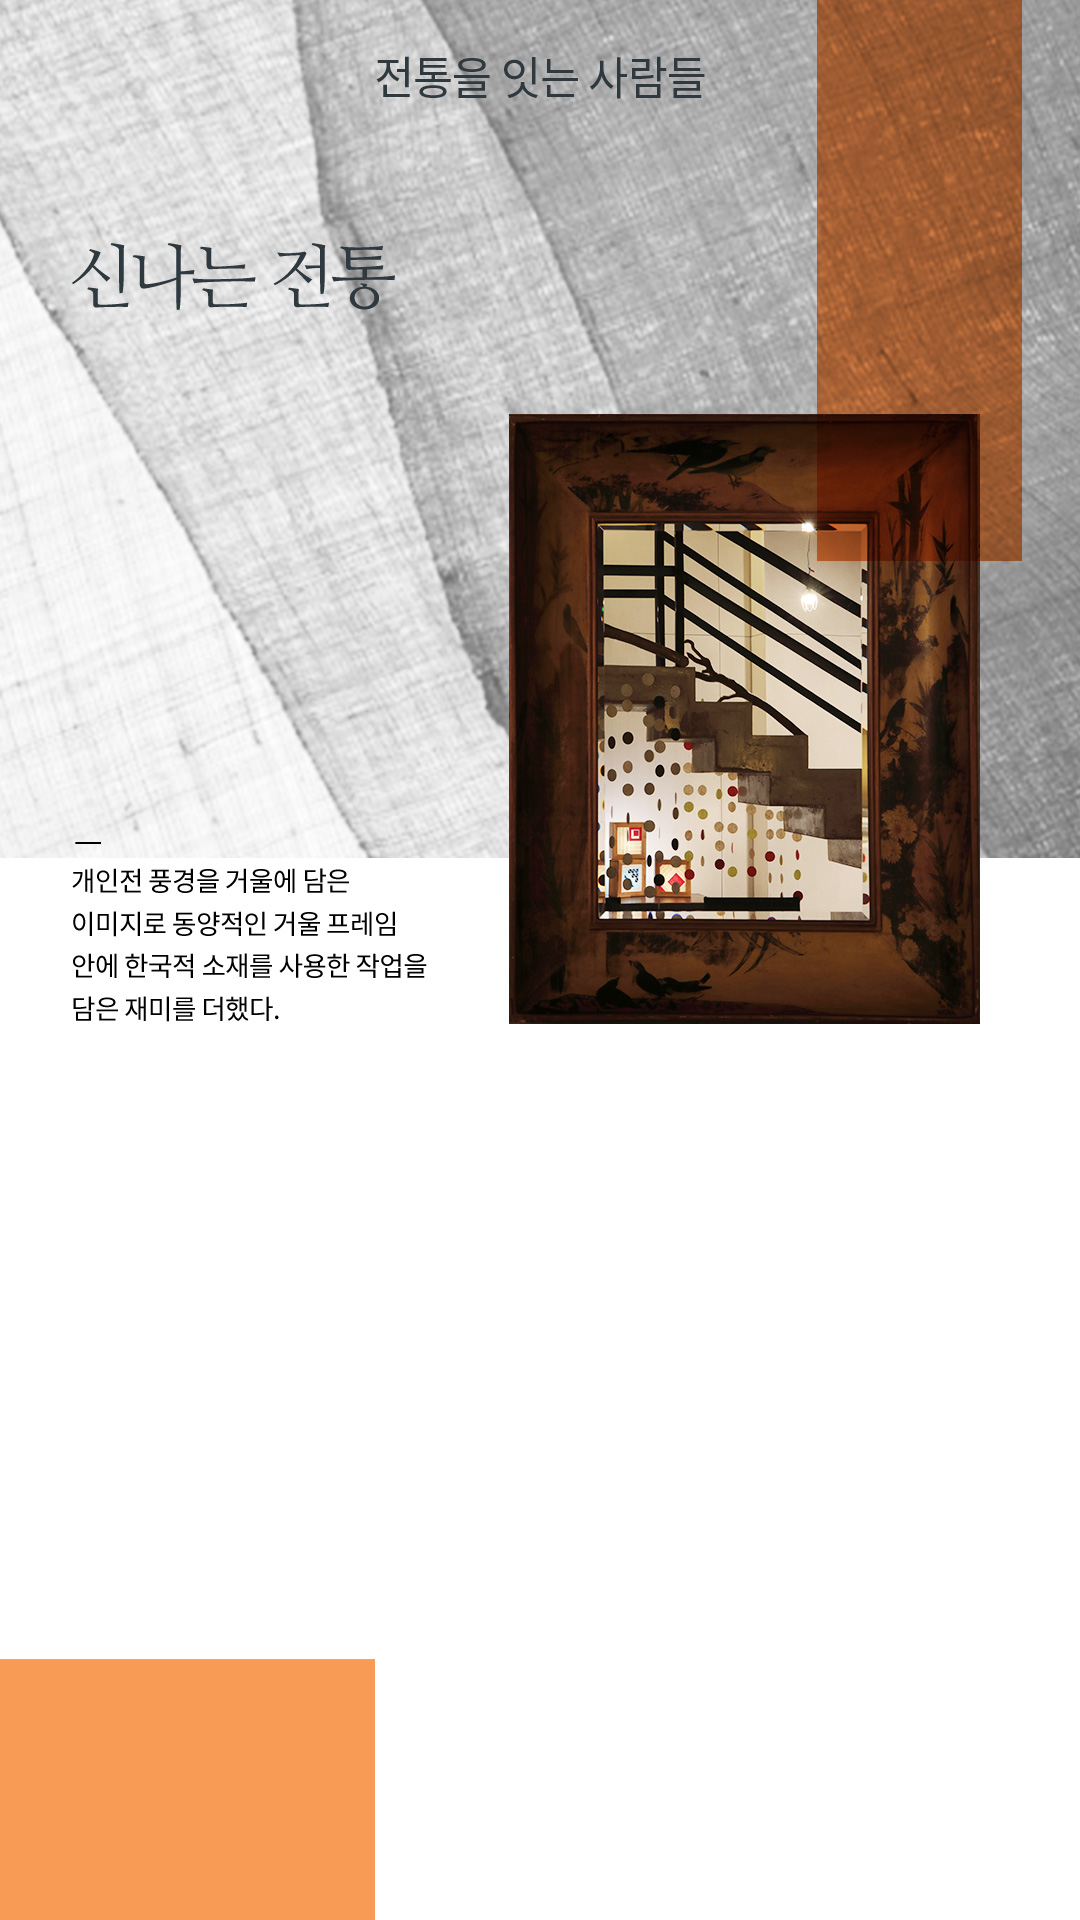 신나는 전통 / 개인전 풍경을 거울에 담은 이미지로 동양적인 거울 프레임 안에 한국적 소재를 사용한 작업을 담은 재미를 더했다.